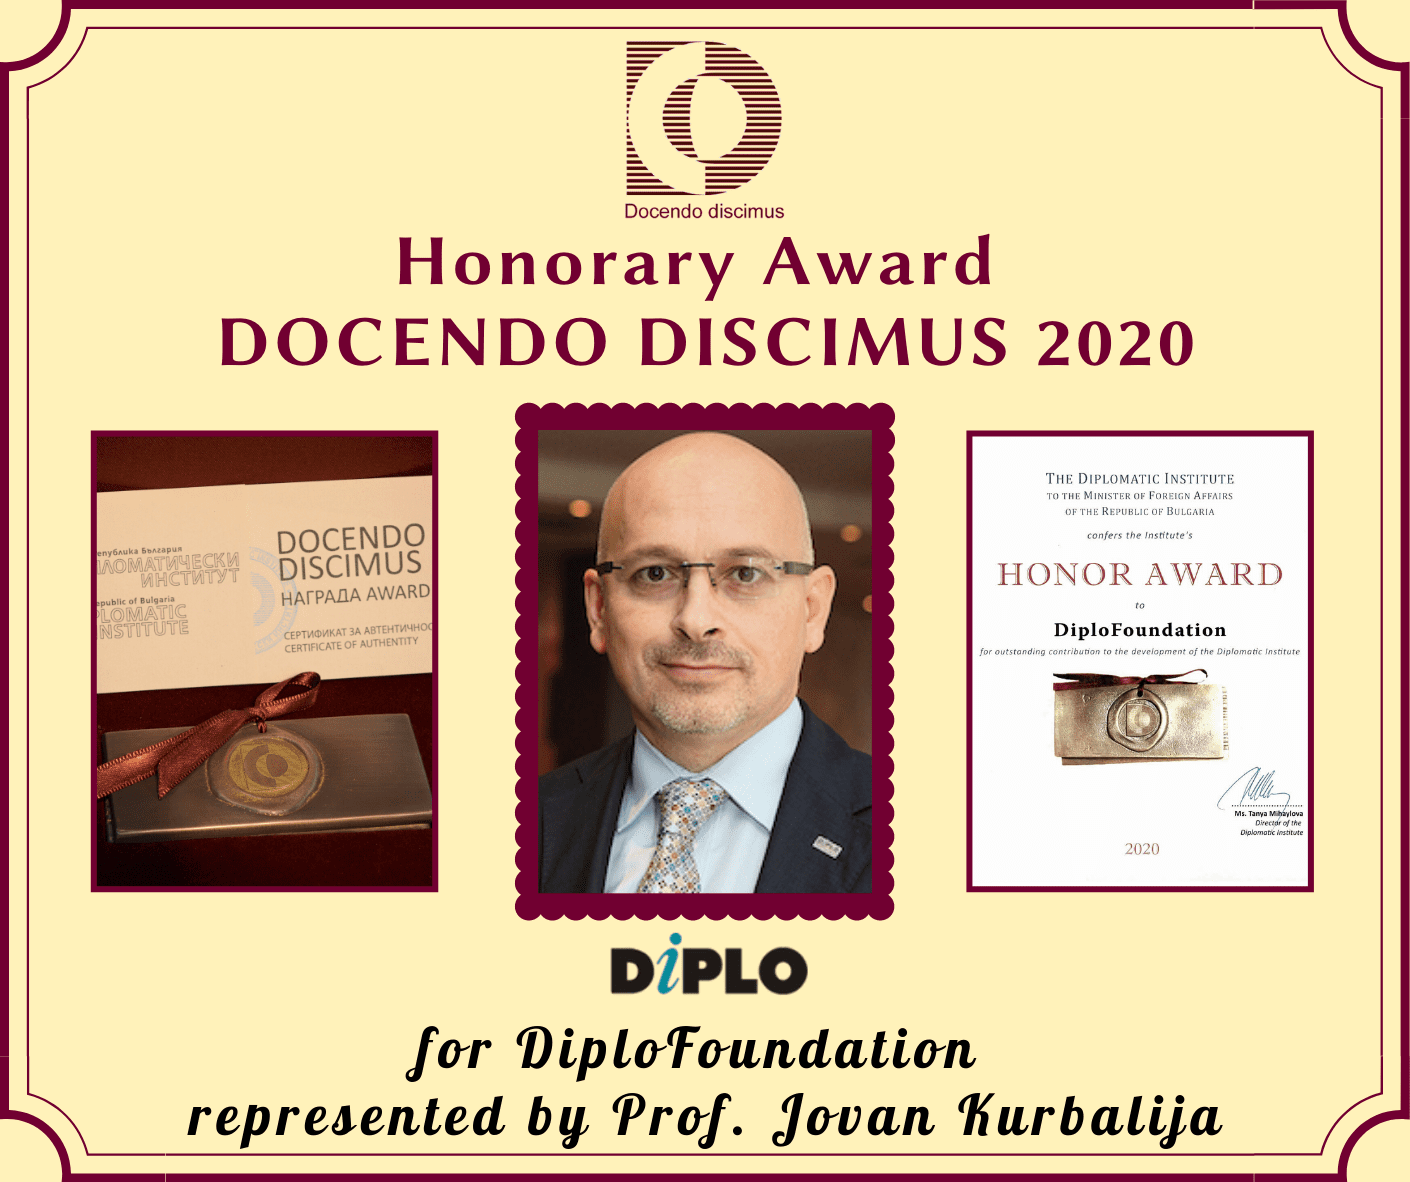 Bulgarian Diplomatic Institute's award to DiploFoundation